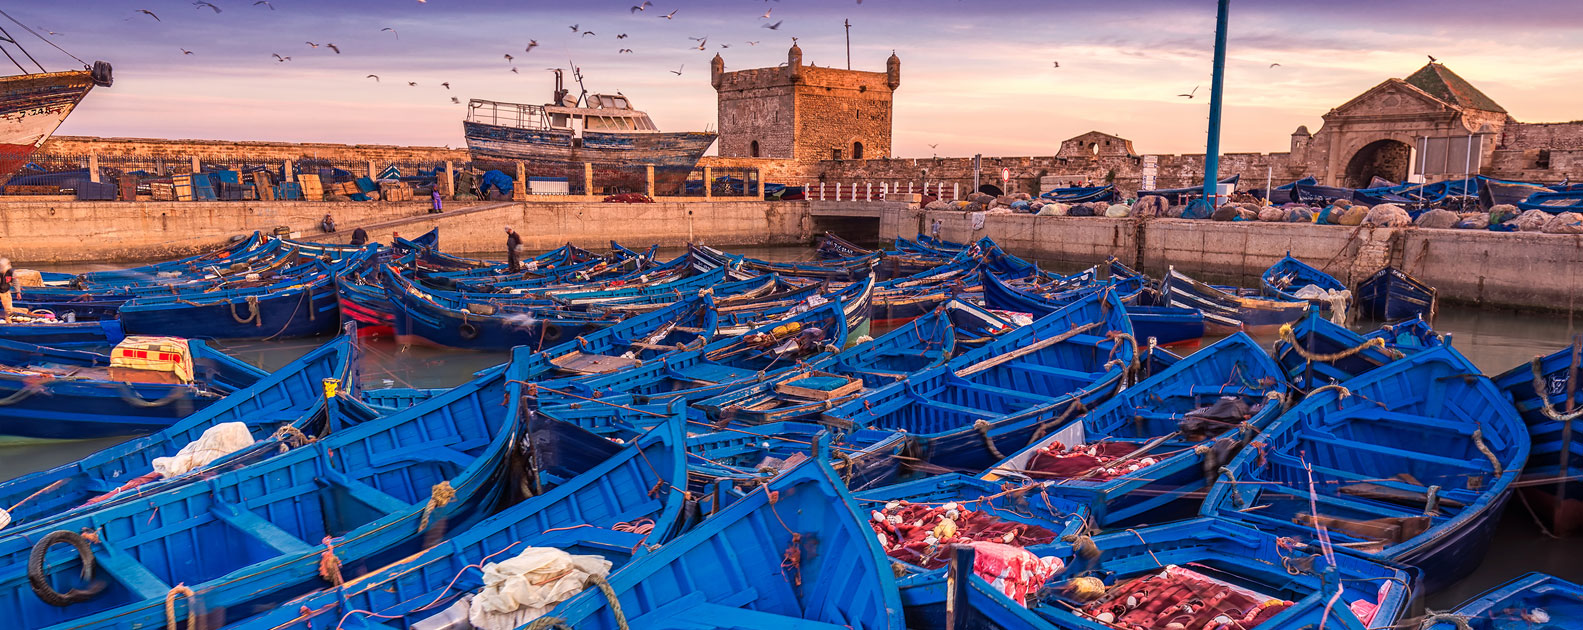 Essaouira-Mogador, salvaje belleza